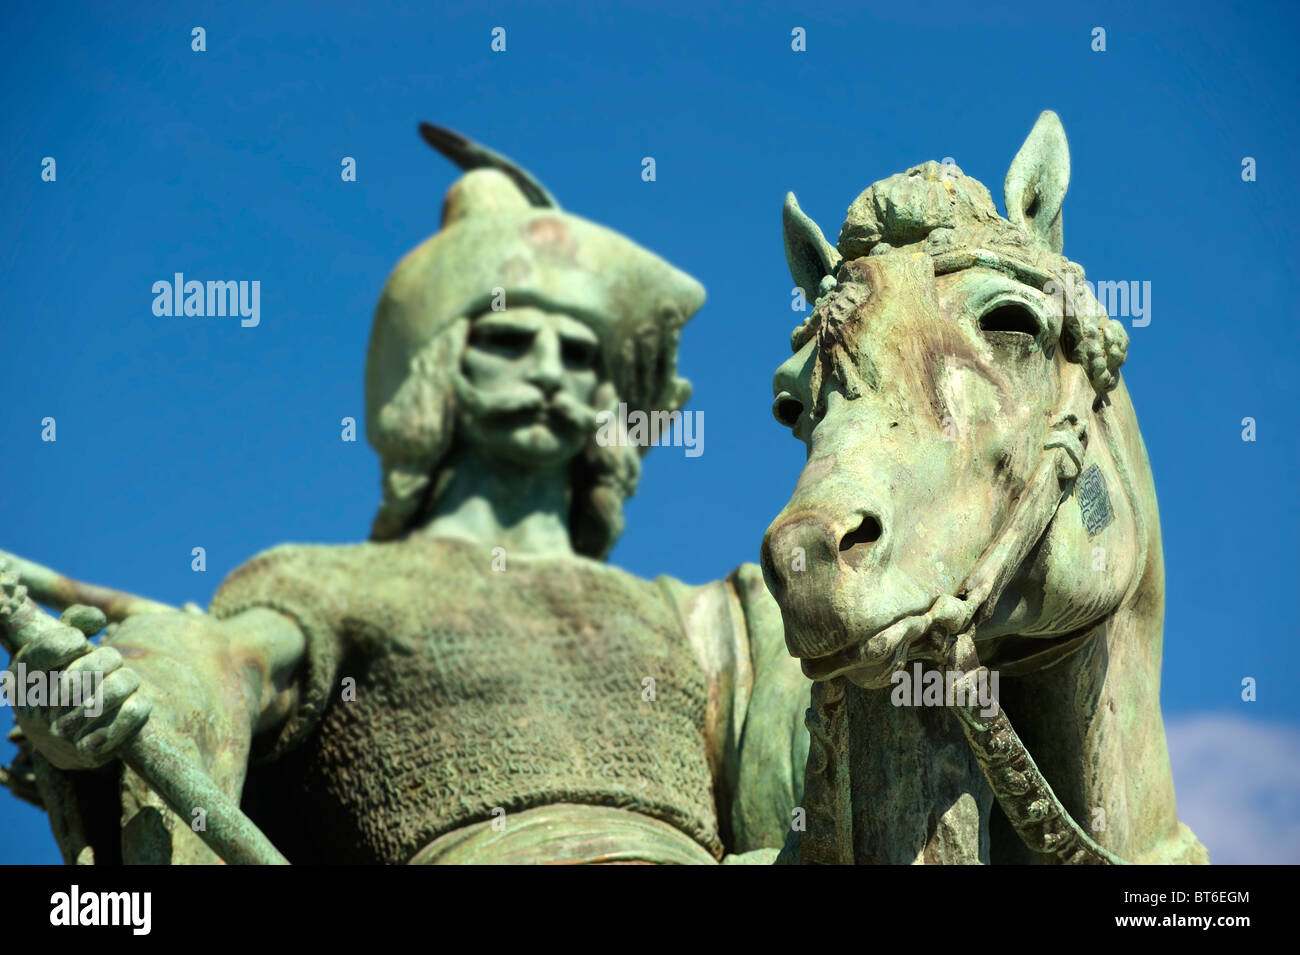 Uno dei Chieftans ungherese - Hősök tere, ( Piazza degli Eroi ) Budapest Ungheria Foto Stock